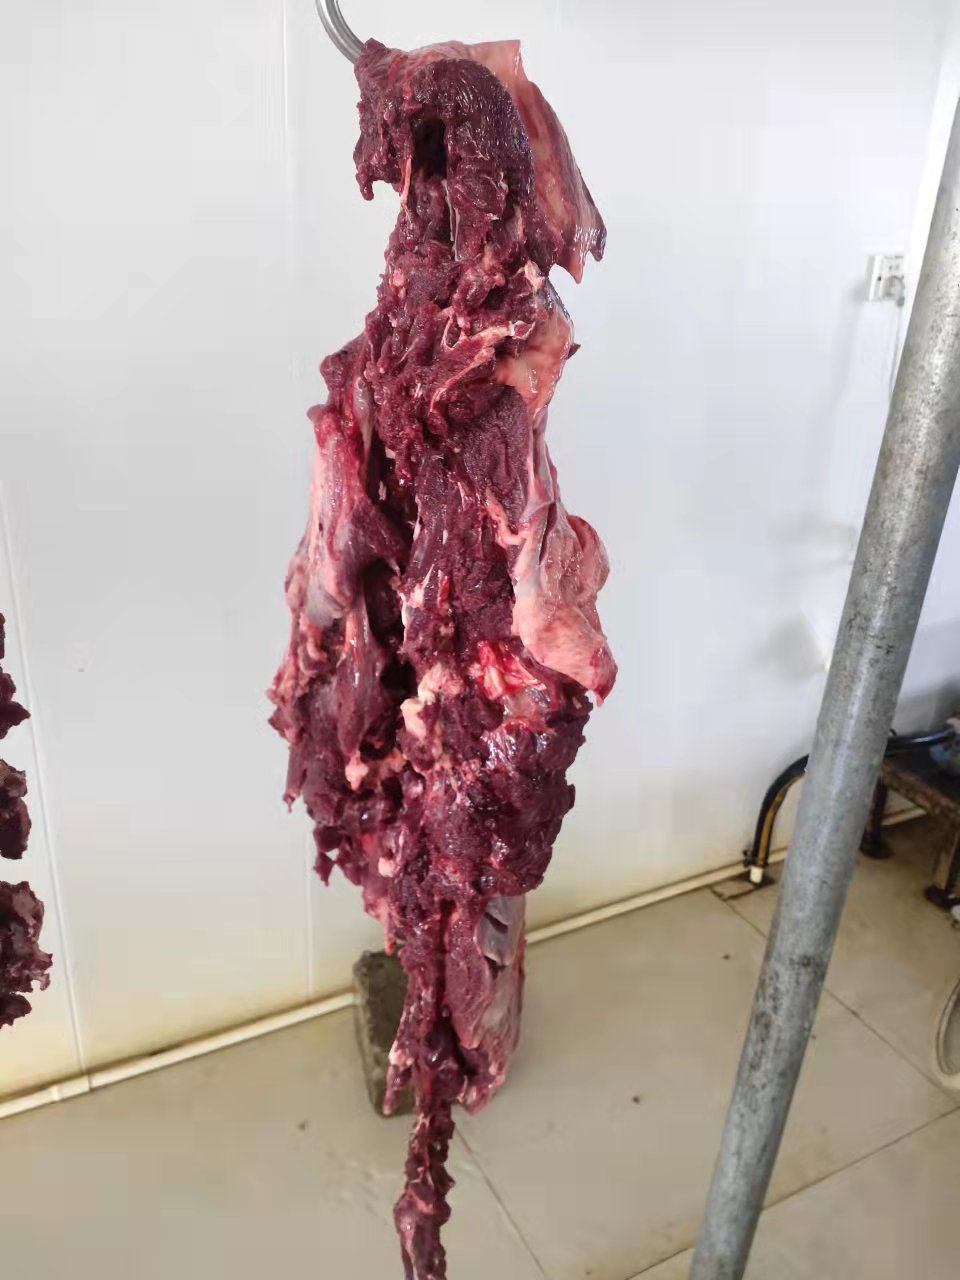 浙江大型驴肉批发市场 驴肉批发厂家直供 全国发货 拴嘴驴